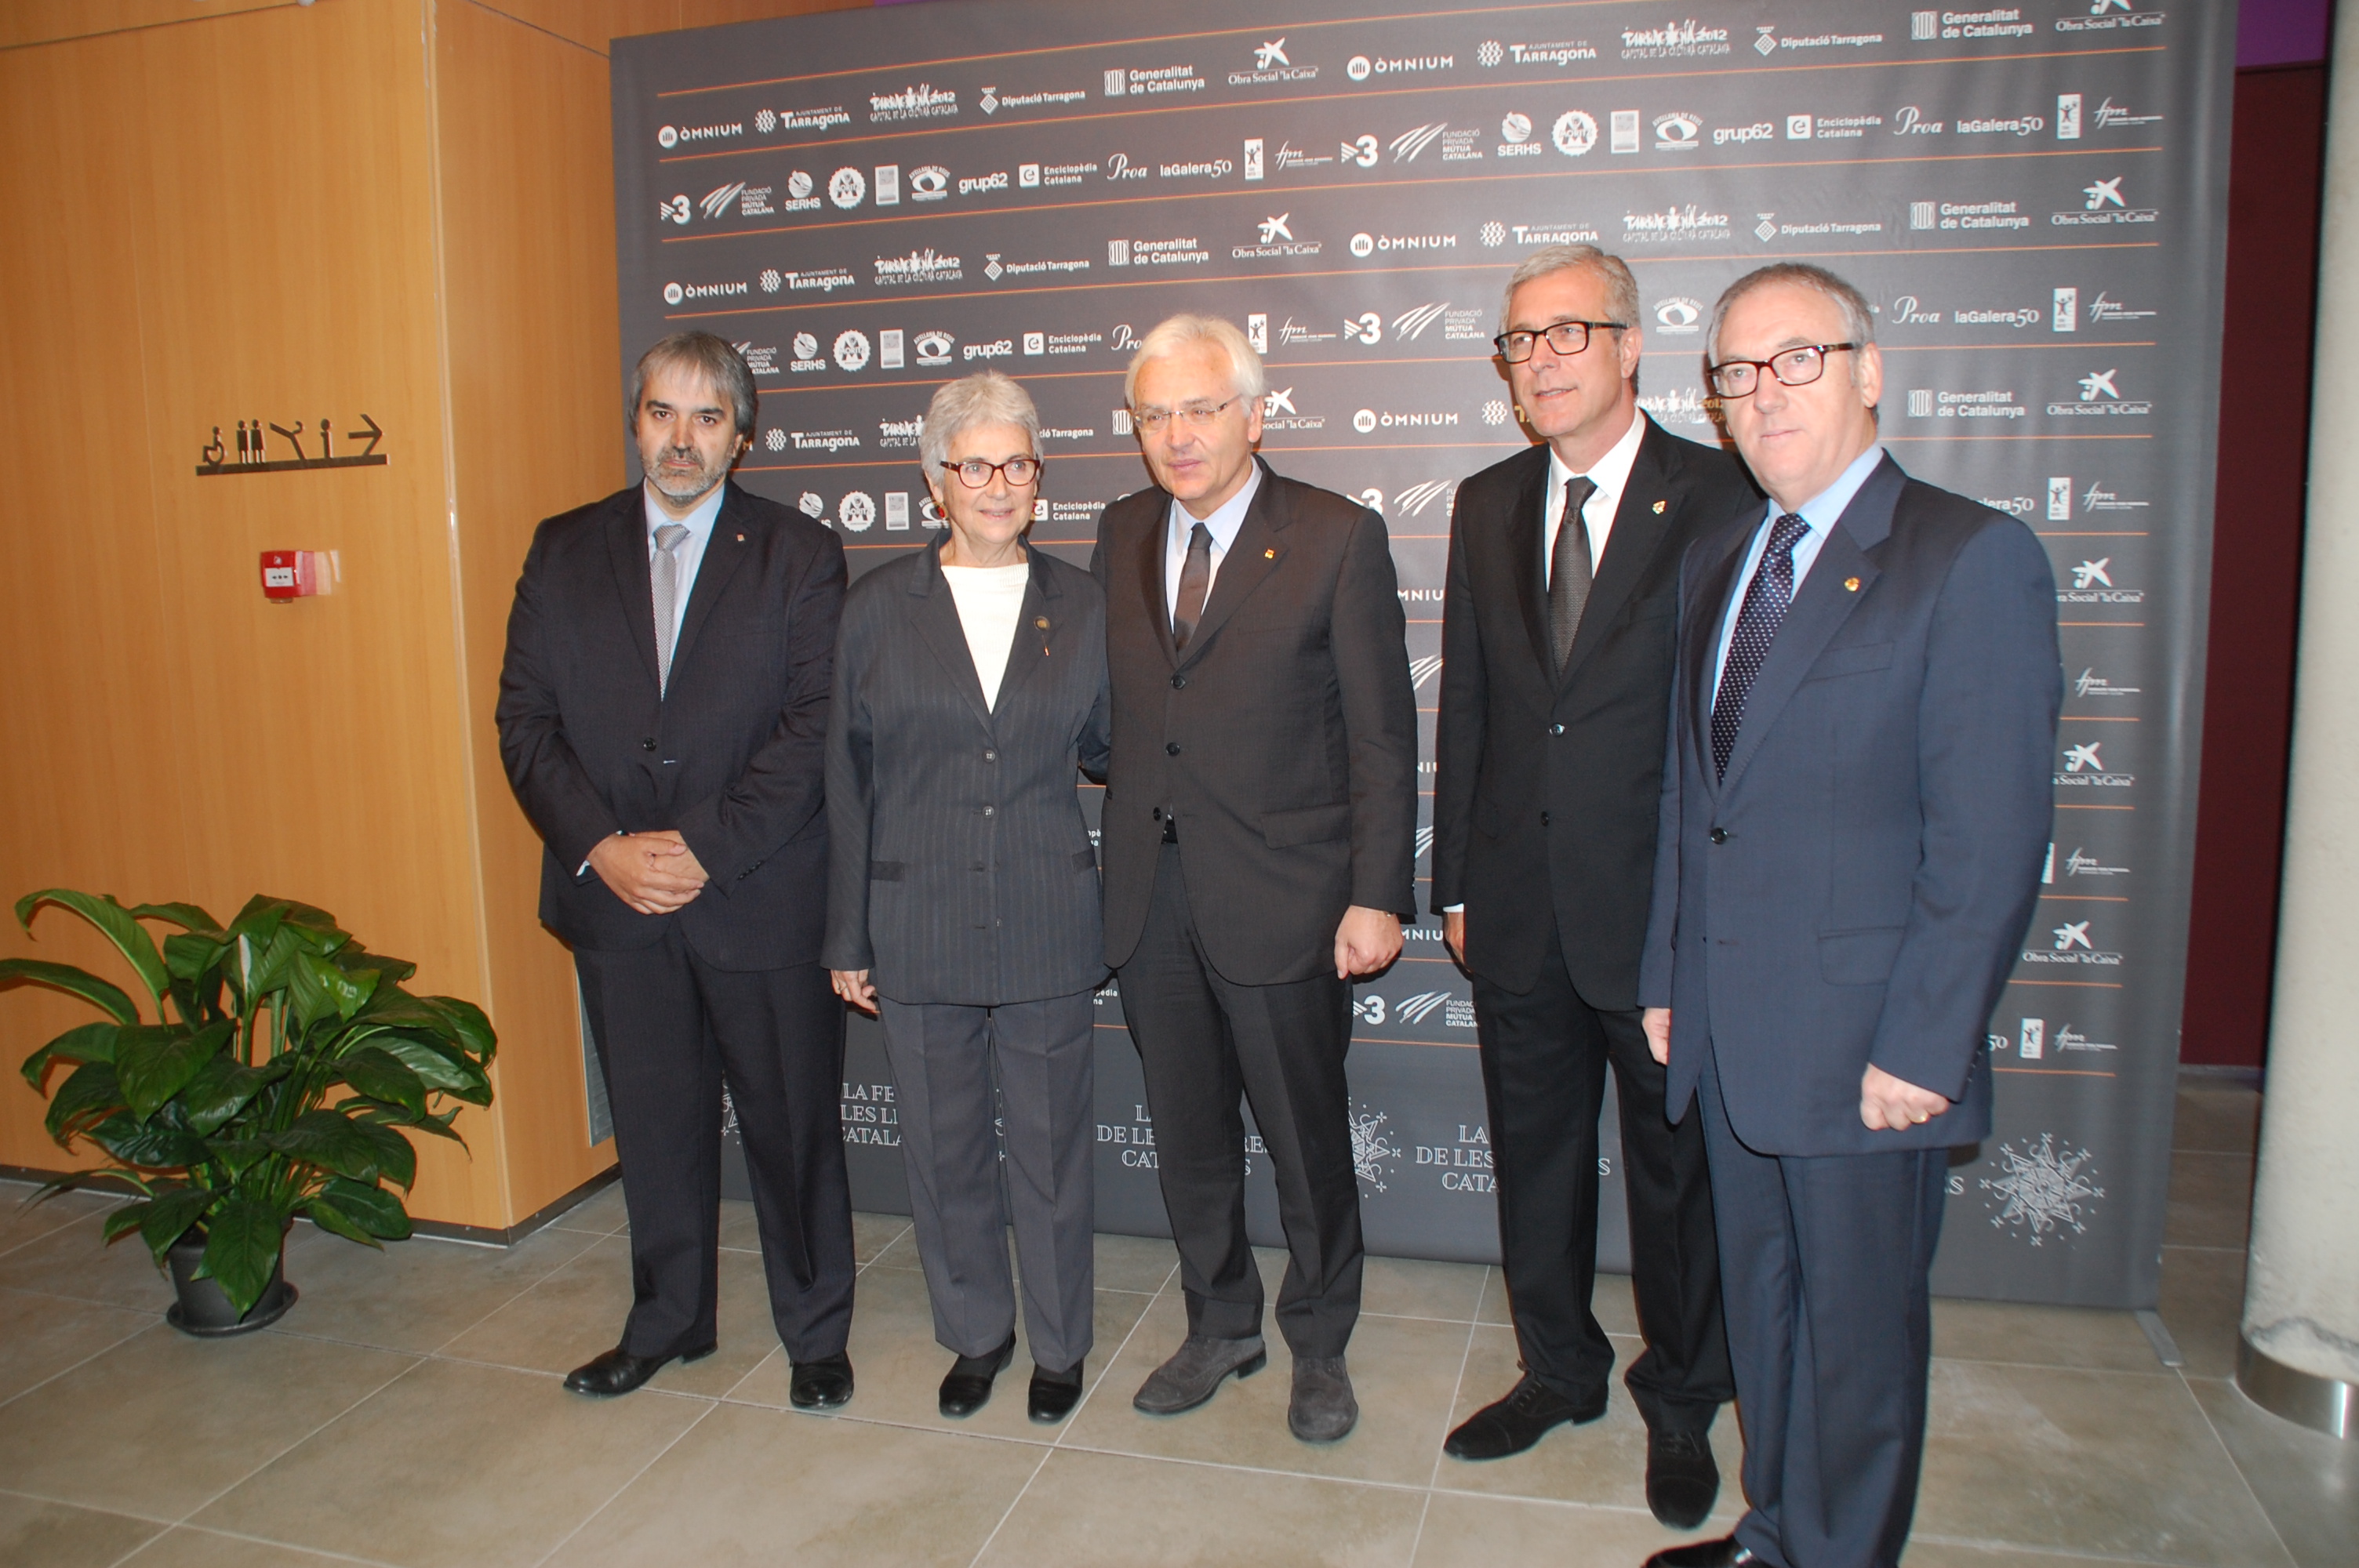 La presidenta d'Òmnium, Muriel Casals, amb el conseller de cultura, l'alcalde de Tarragona, el president de la Diputació i el delegat del govern (foto: Mauri)